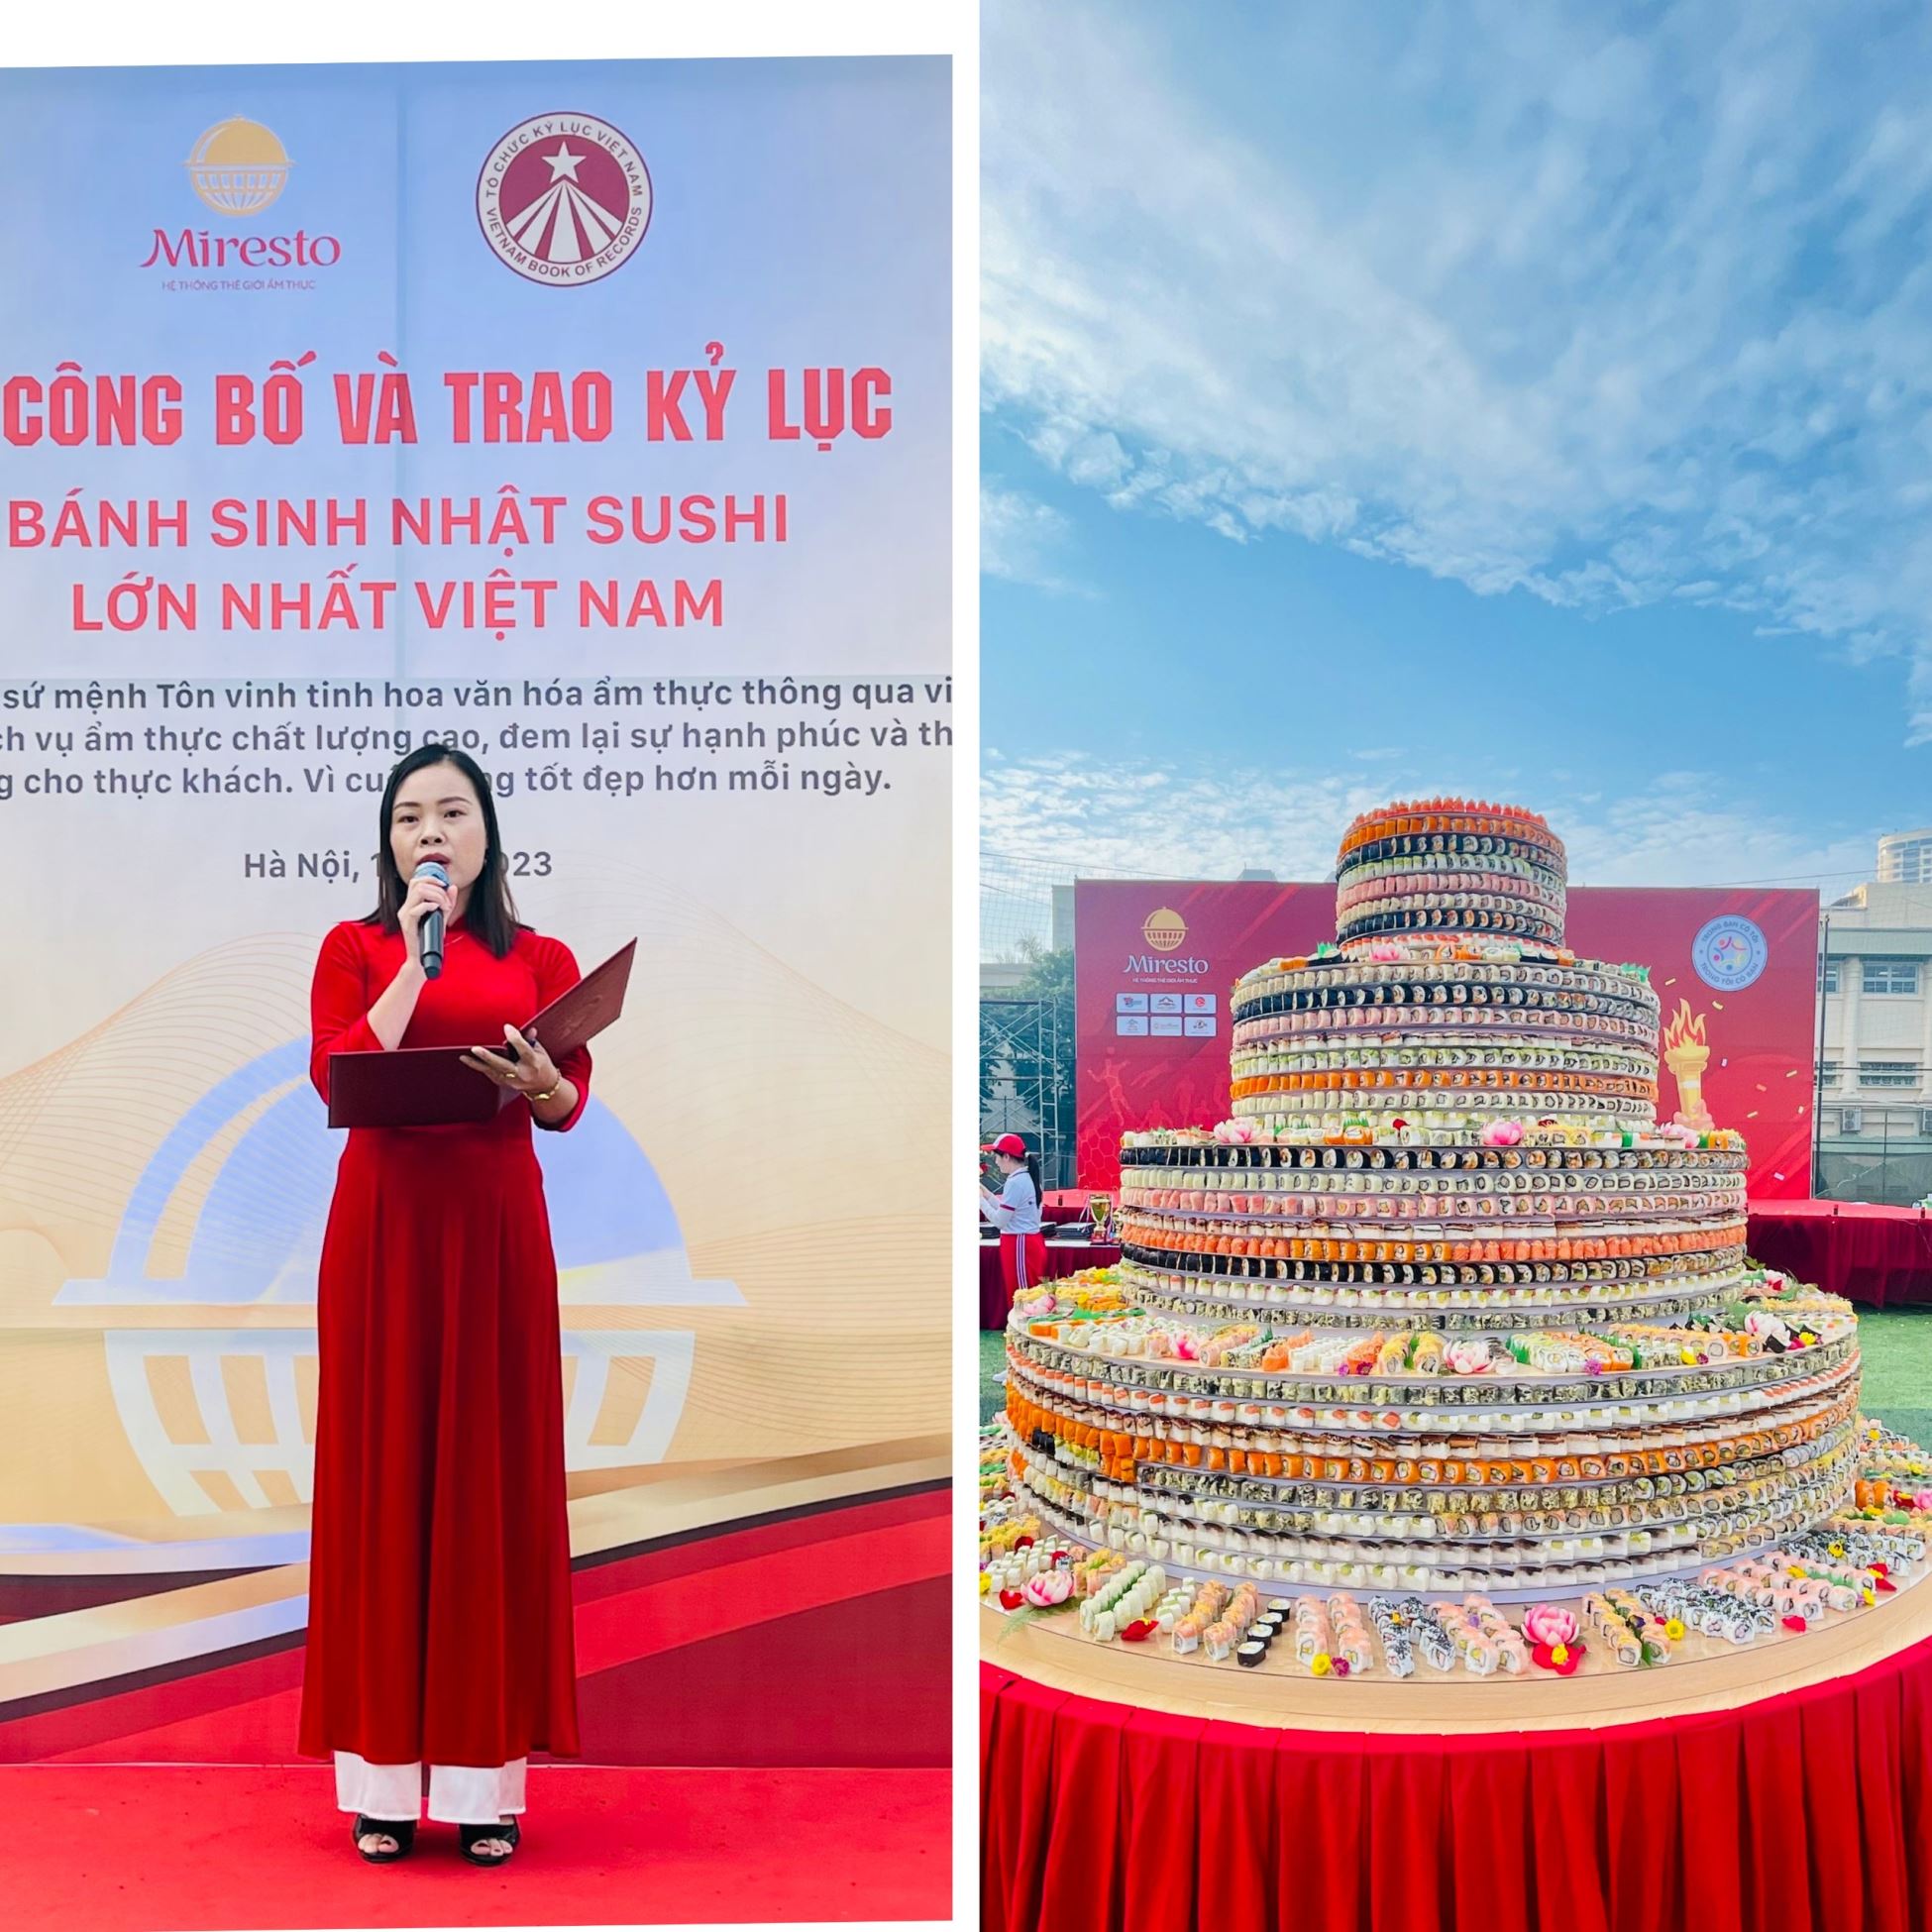 Bà Phạm Thị Vân - Phó trưởng đại diện VP Kỷ lục tại miền Bắc đại diện công bố Quyết định xác lập Kỷ lục Việt Nam đến Công ty Cổ phần ẩm thực Fuku.